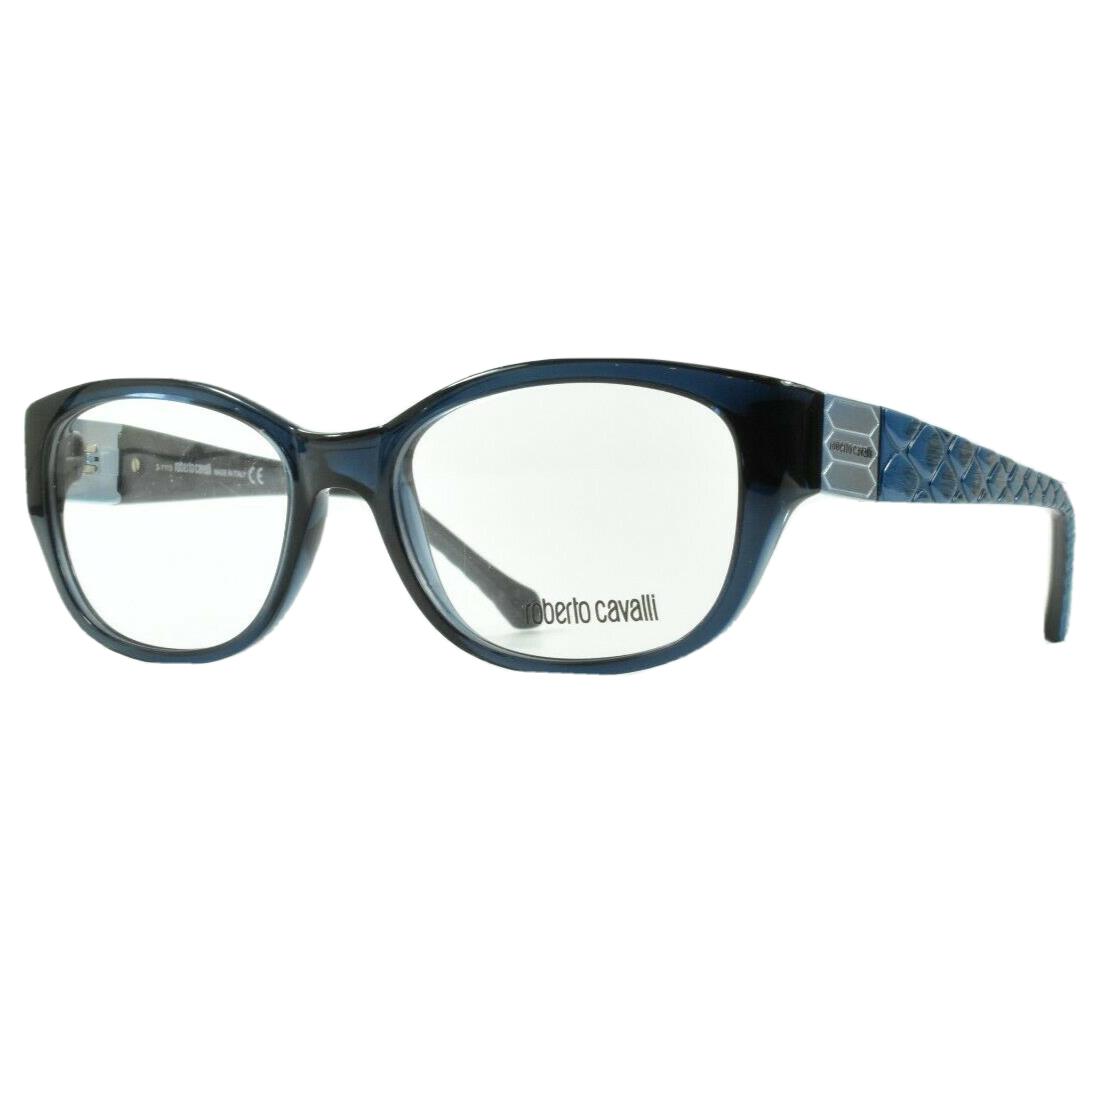 Roberto Cavalli Velidhu 0754/V 090 Full Rim Blue Optical Frame Eyeglasses - Frame: Blue